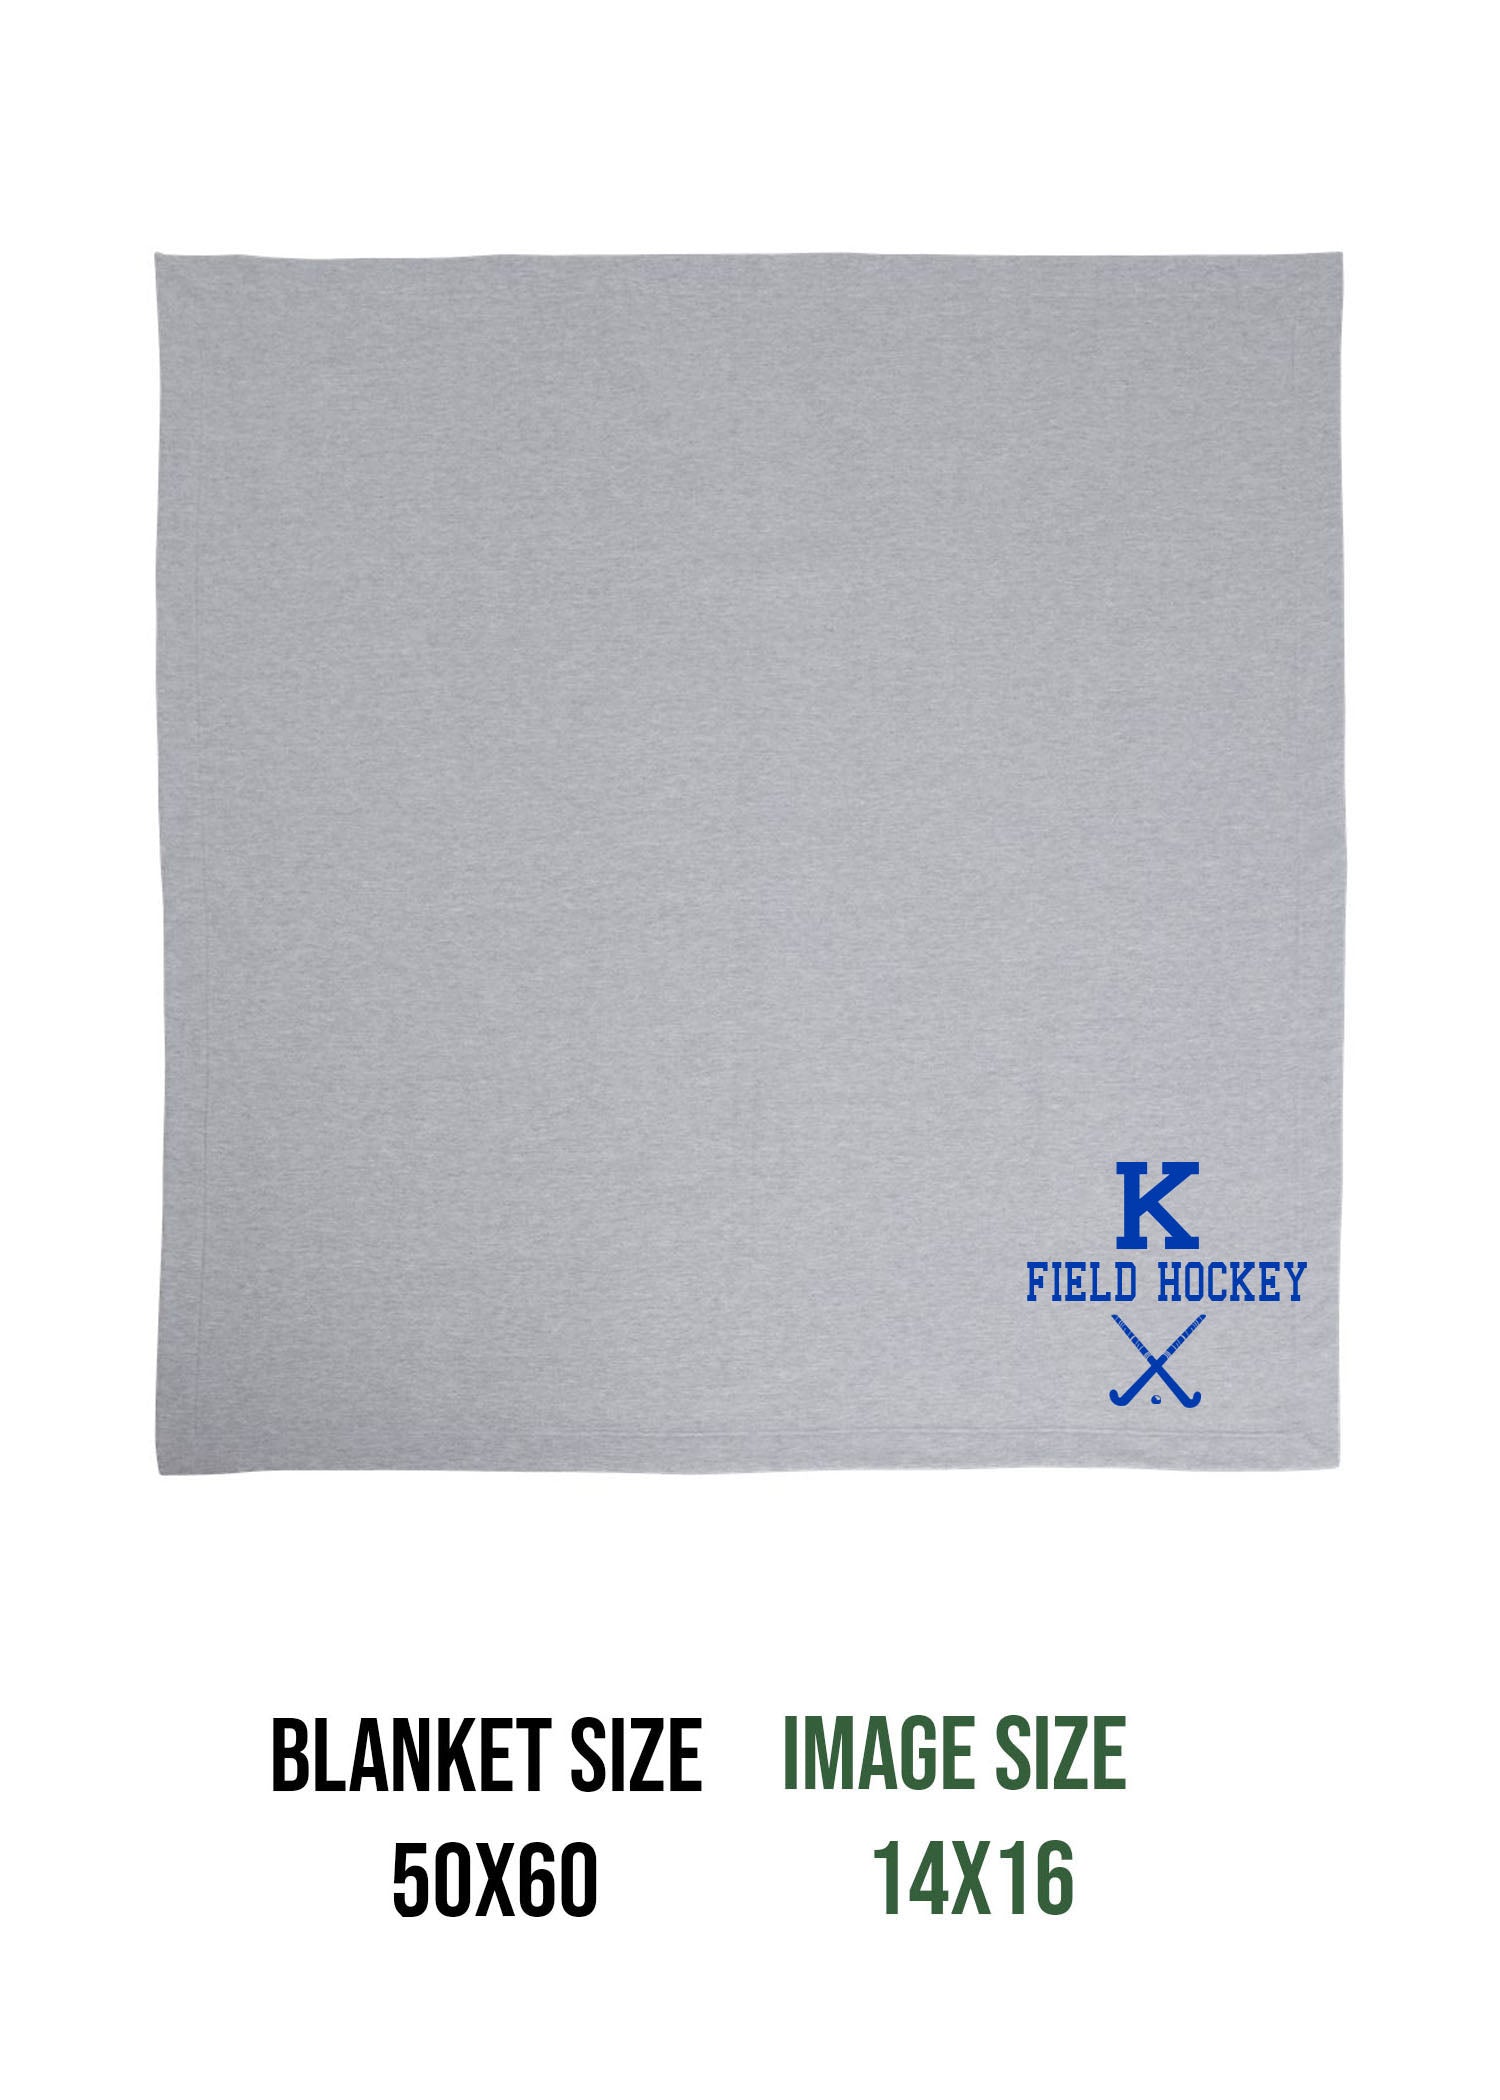 Kittatinny Jr High Field Hockey Design 5 Blanket